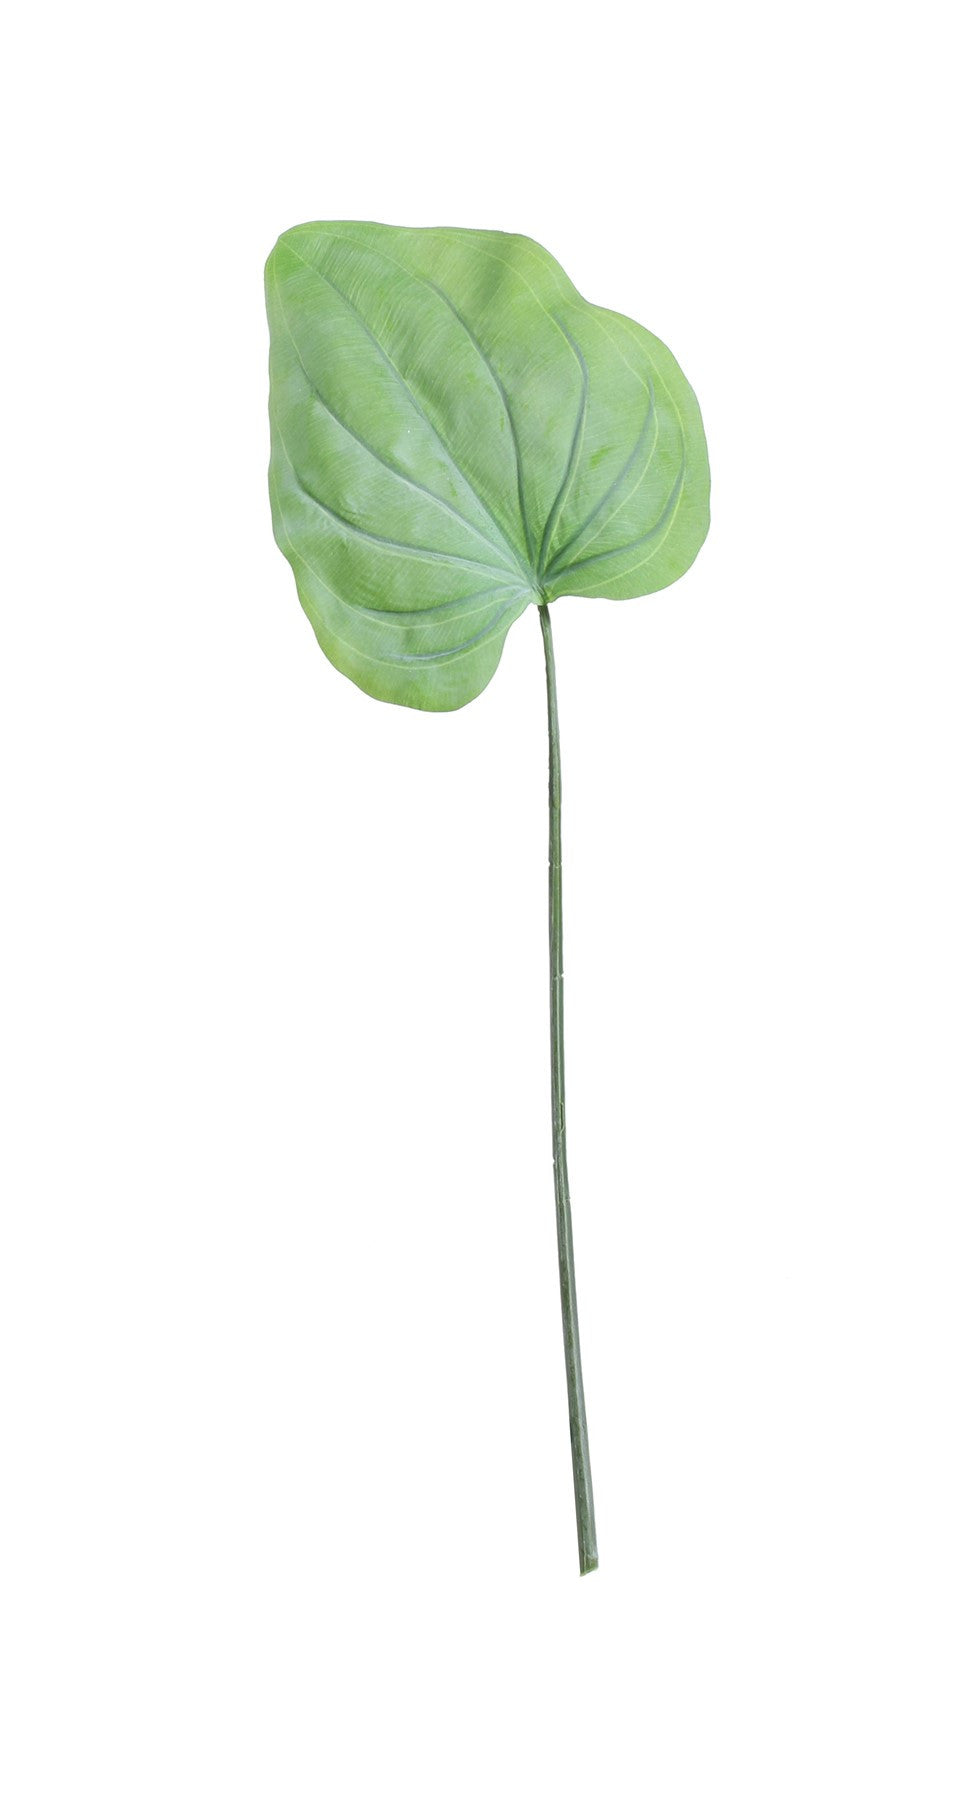 View Large Hosta Leaf Green 56cm information